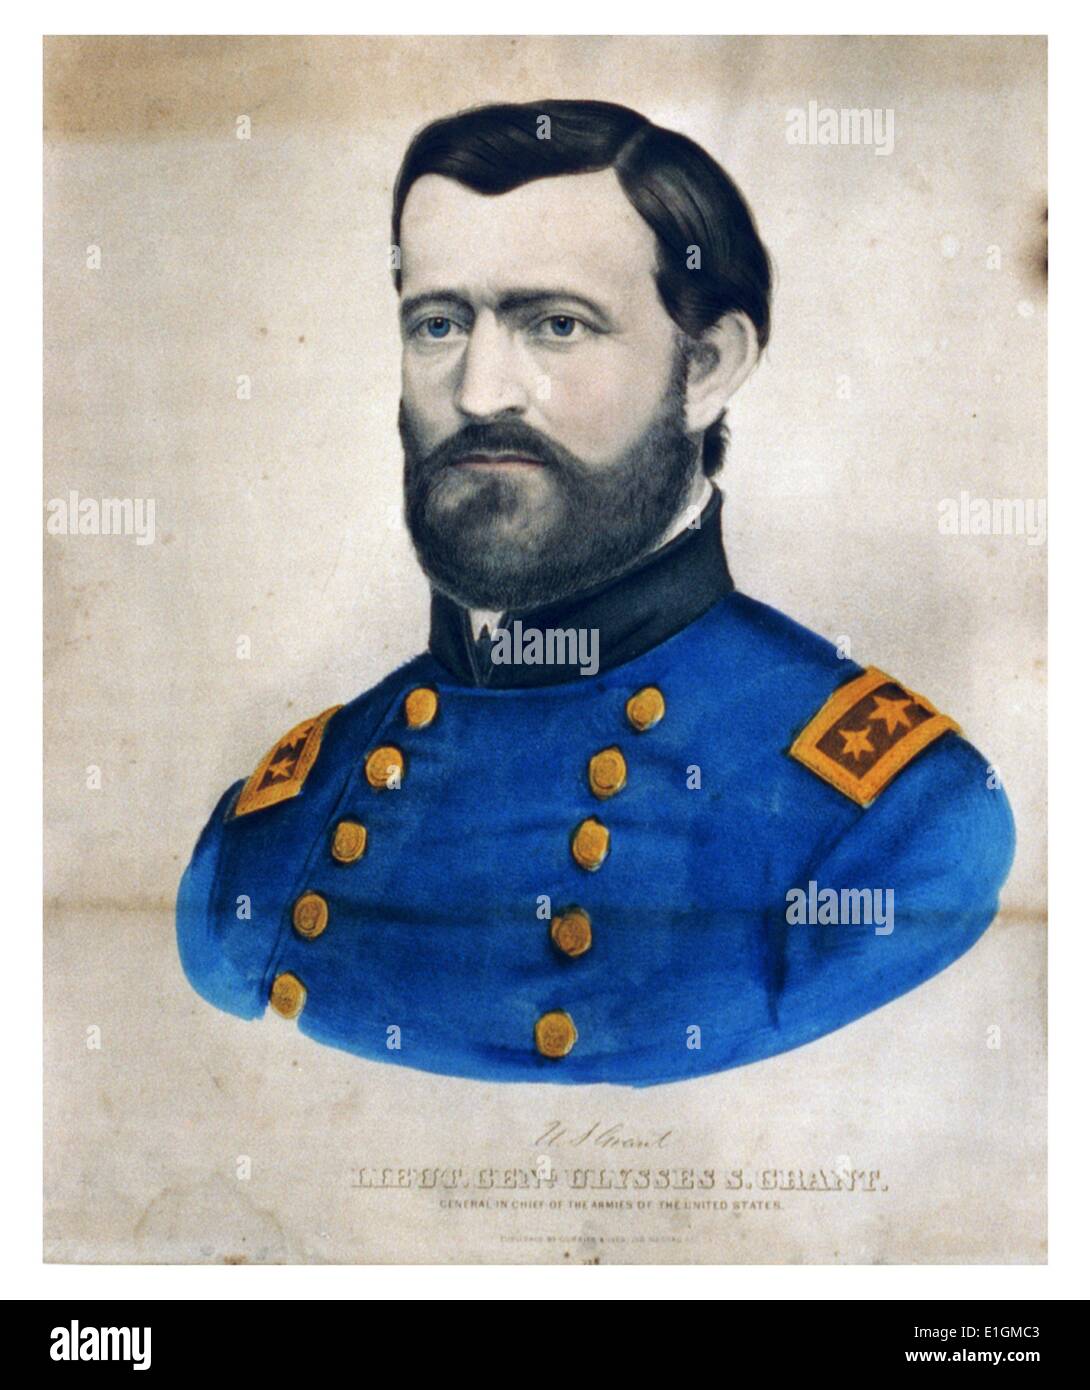 Handkolorierte und Currier Ives Abbildung von lieut. Genl. Ulysses S. Grant, General in der Armee der Vereinigten Staaten von Amerika. Vom 1880 Stockfoto